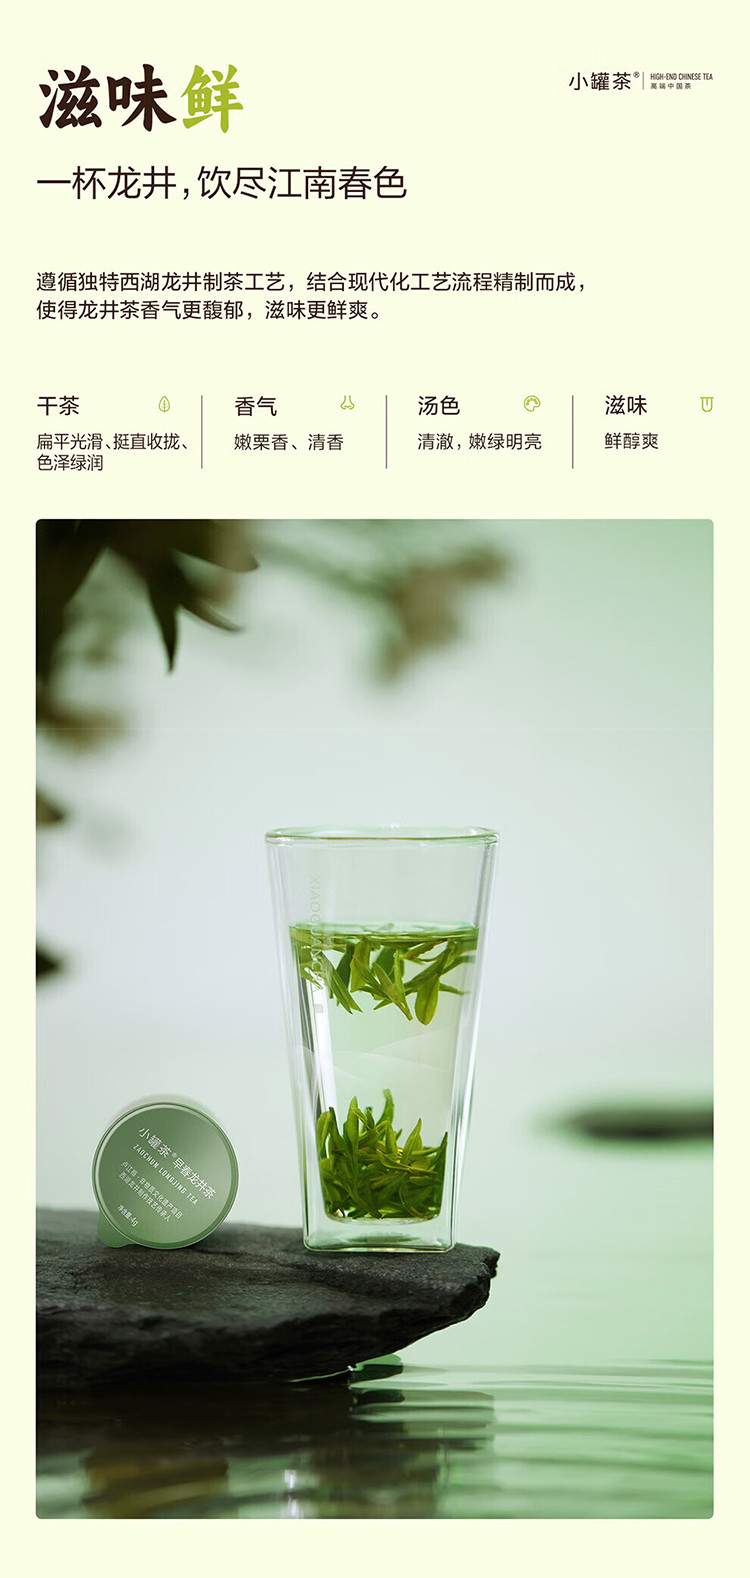 小罐茶/XIAOGUANCHA 银罐系列24罐装早春龙井茶24X4g